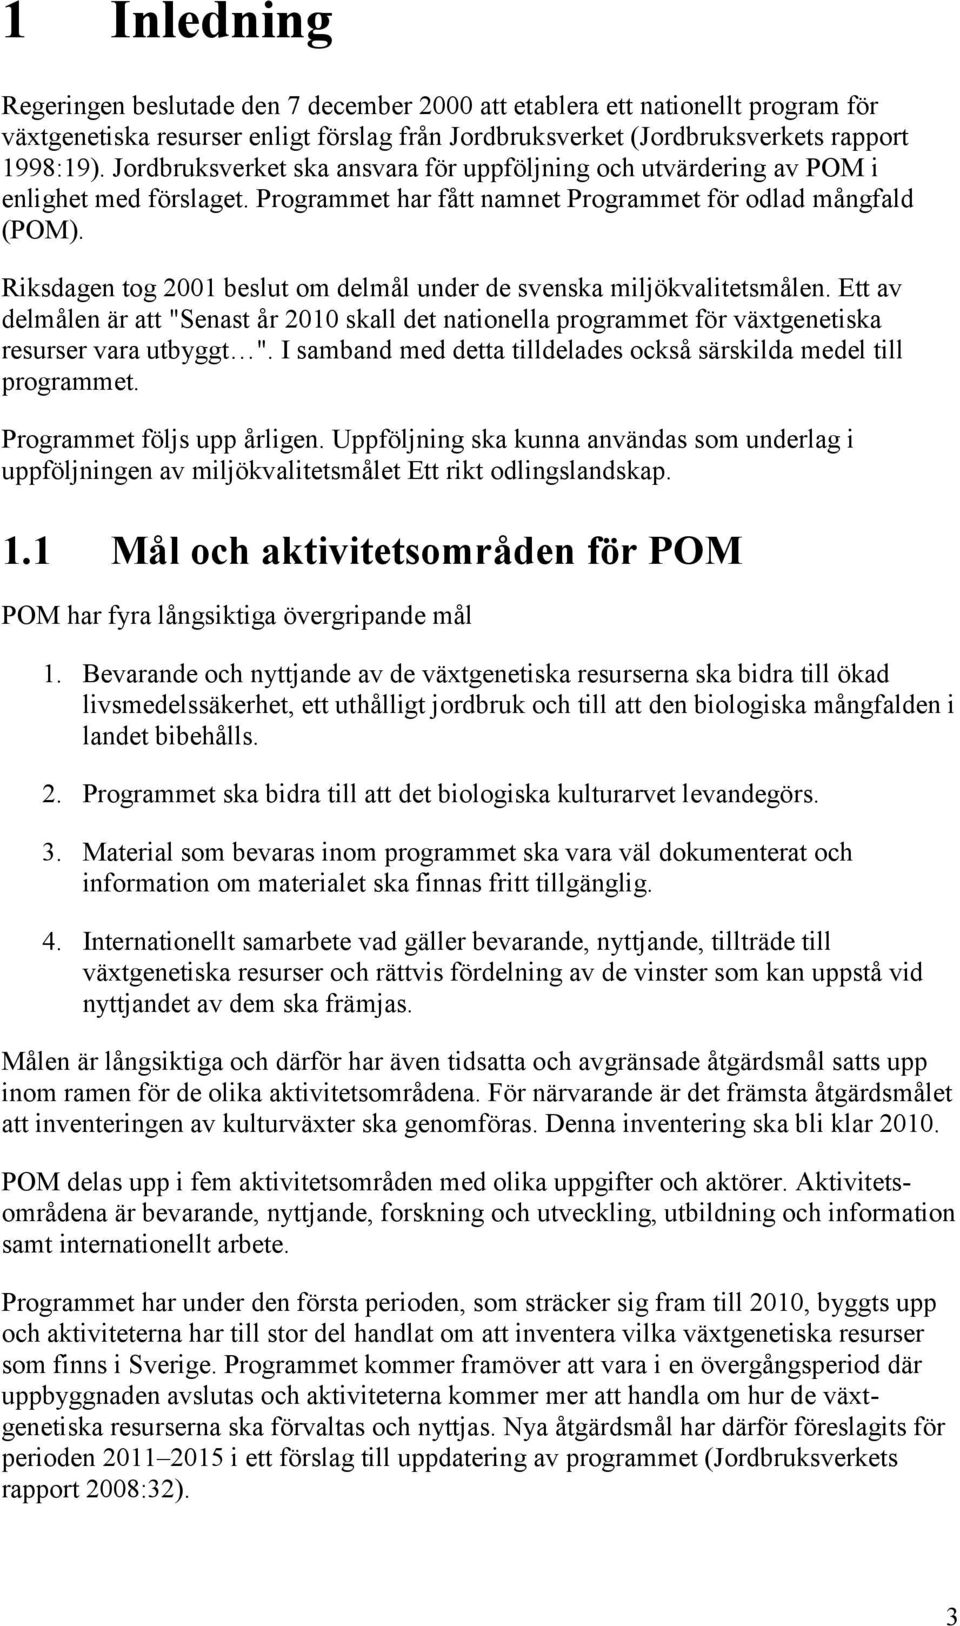 Riksdagen tog 2001 beslut om delmål under de svenska miljökvalitetsmålen. Ett av delmålen är att "Senast år 2010 skall det nationella programmet för växtgenetiska resurser vara utbyggt ".